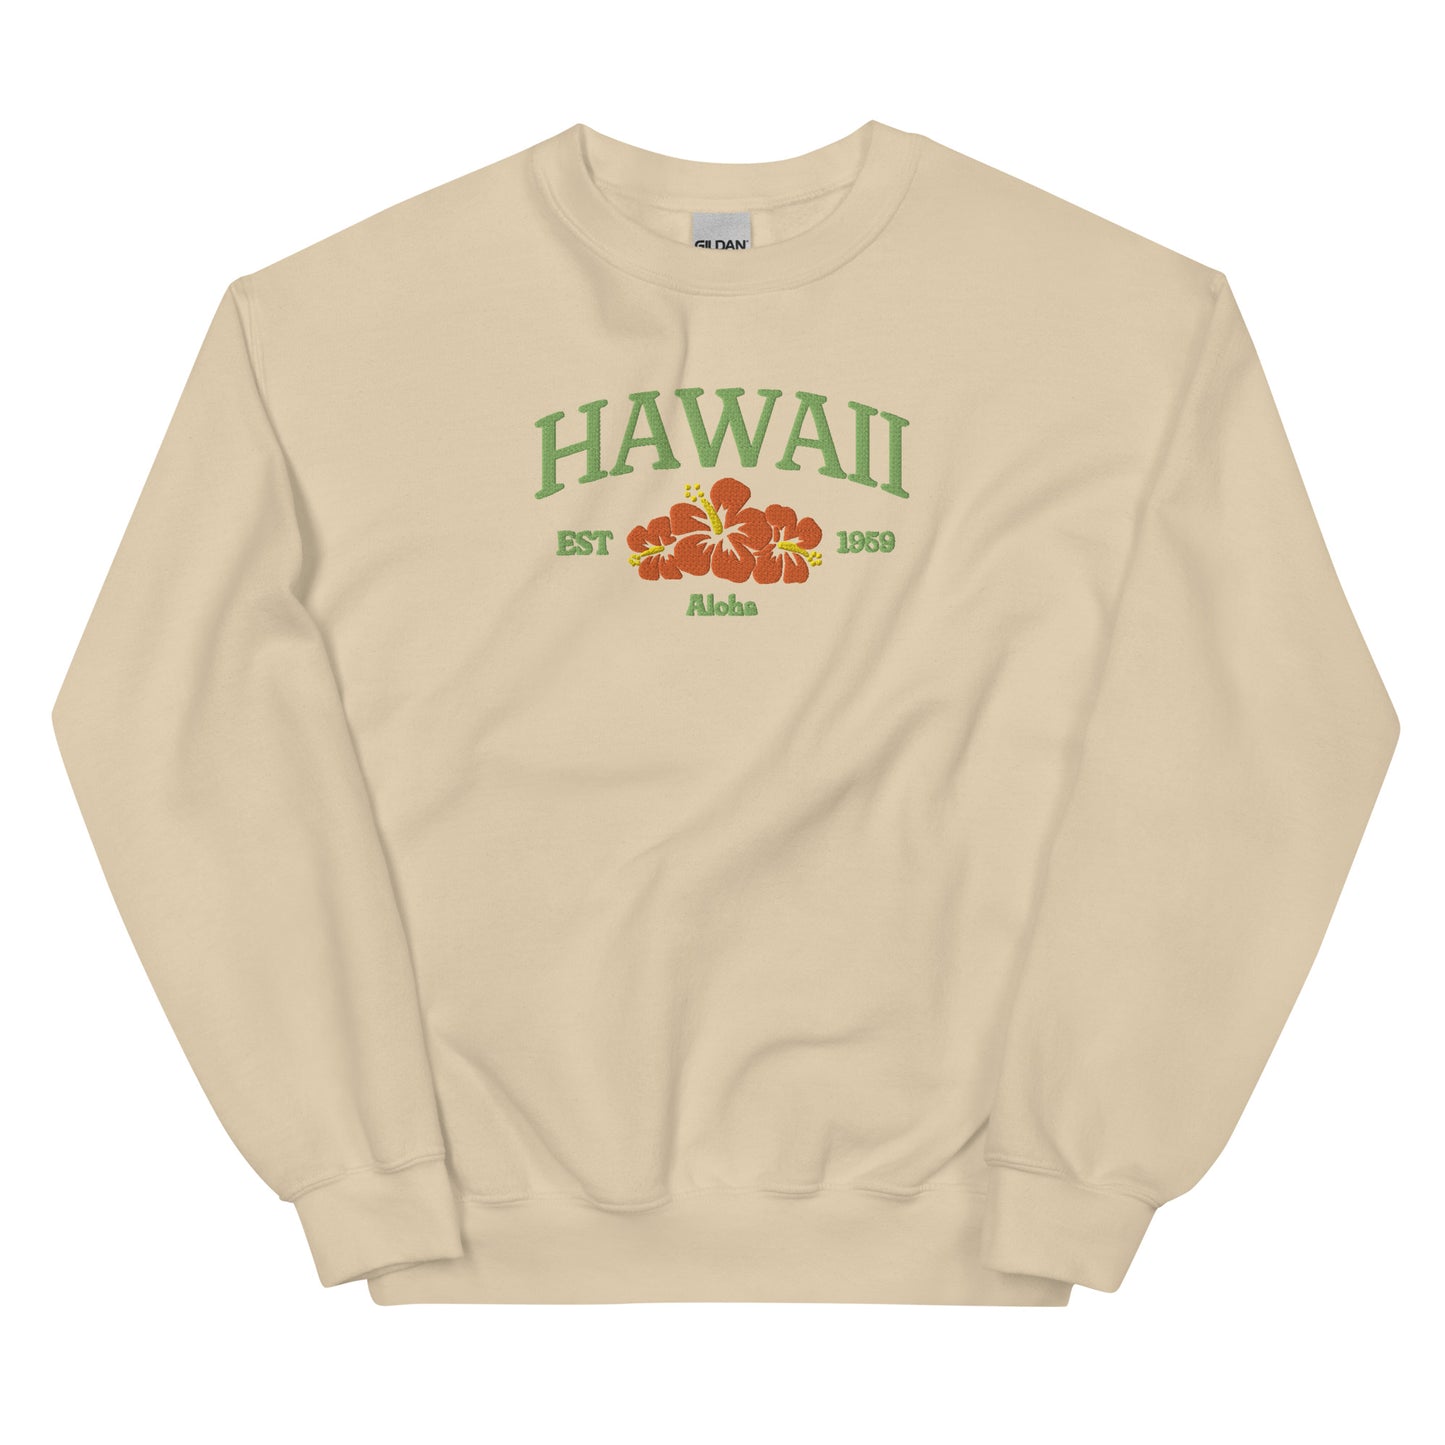 Hawaii Embroidered Sweatshirt in Green/Orange